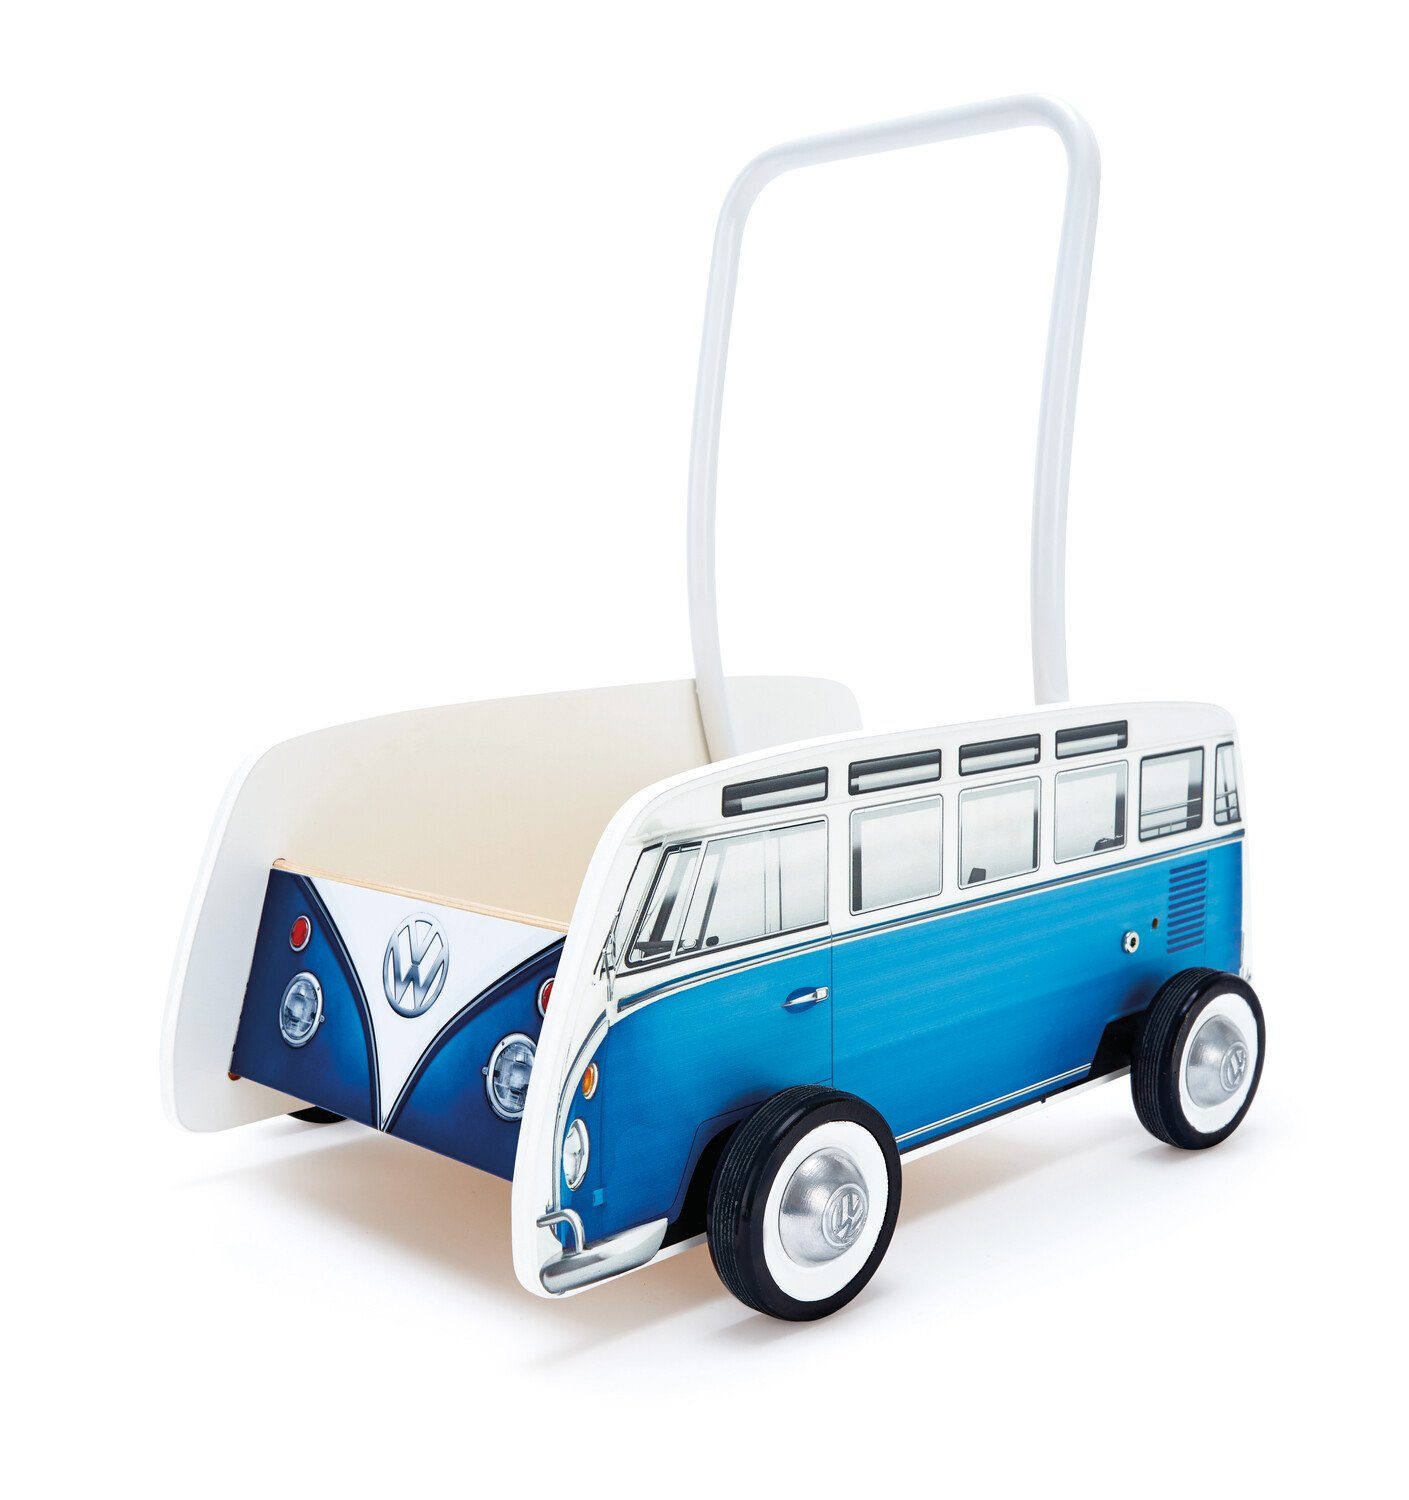 VW Collection by BRISA Lauflernwagen Volkswagen Lauflernhilfe im VW T1 Bulli Bus Design aus Holz, 47,4 x 36 x 48,3 cm Blau/Weiß